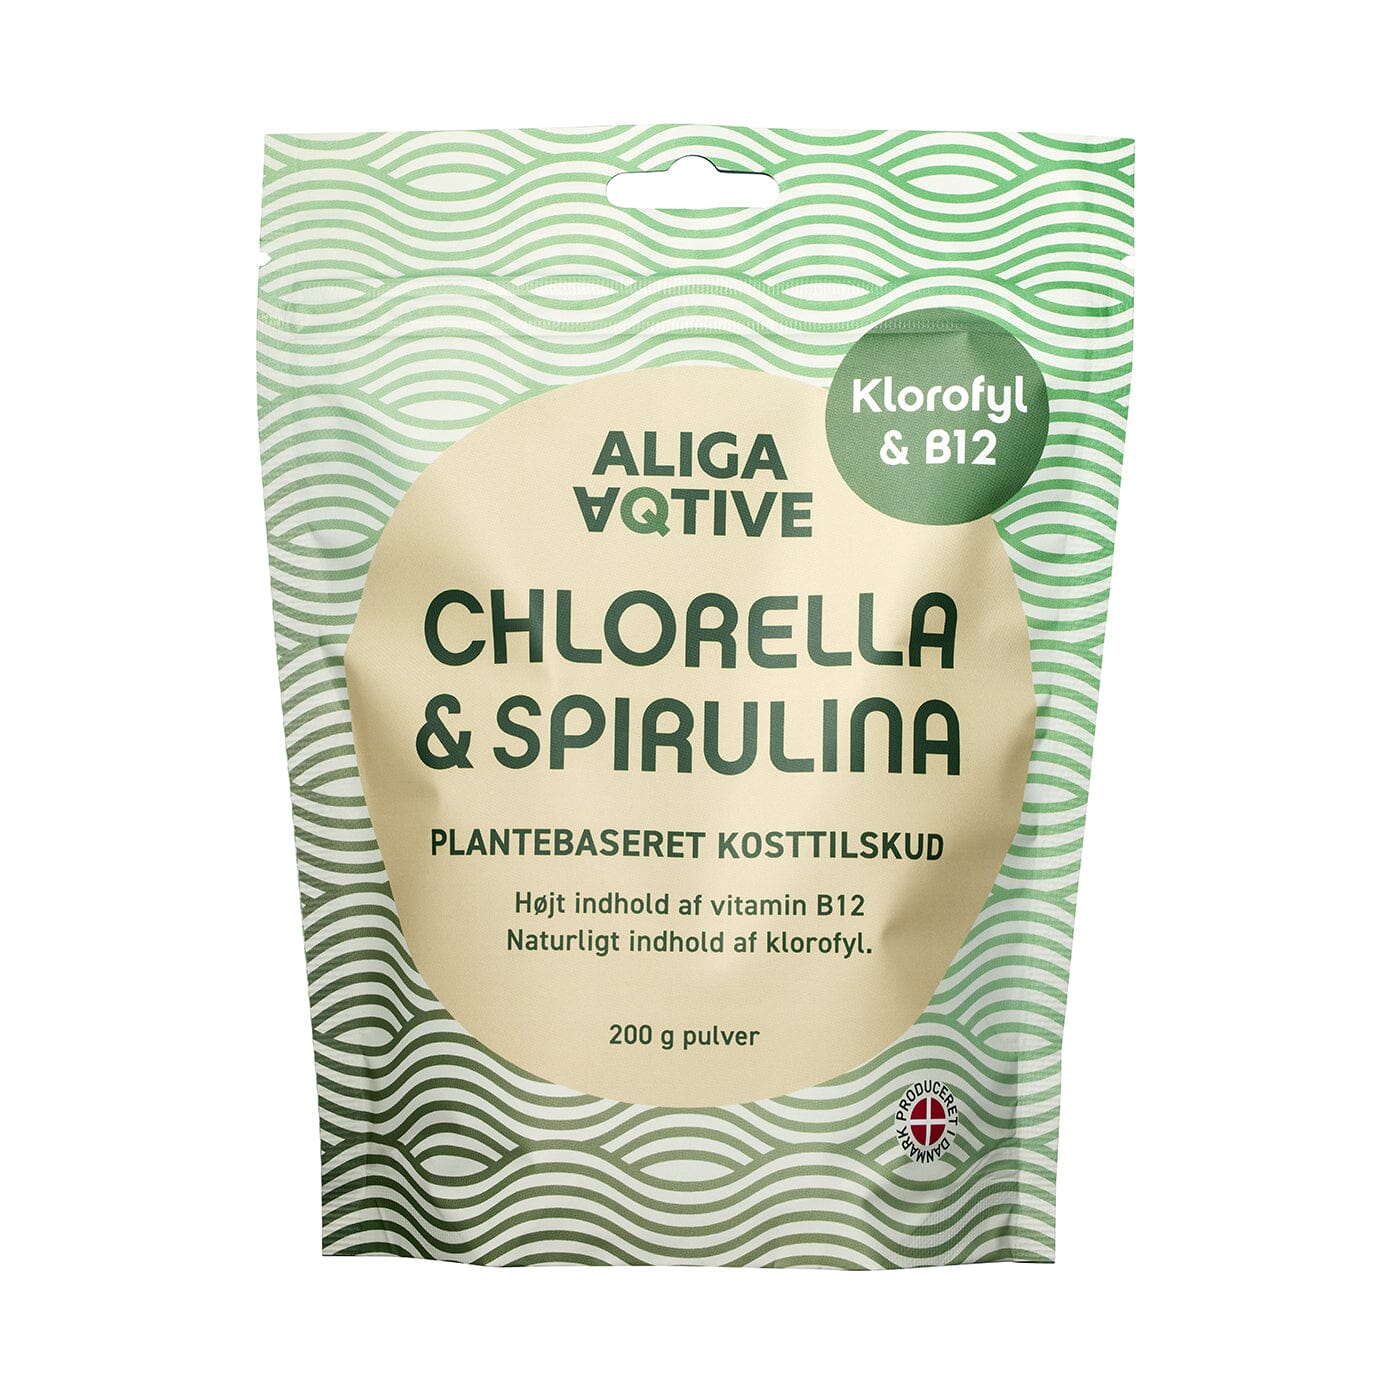 Aliga Chlorella & Spirulina pulver